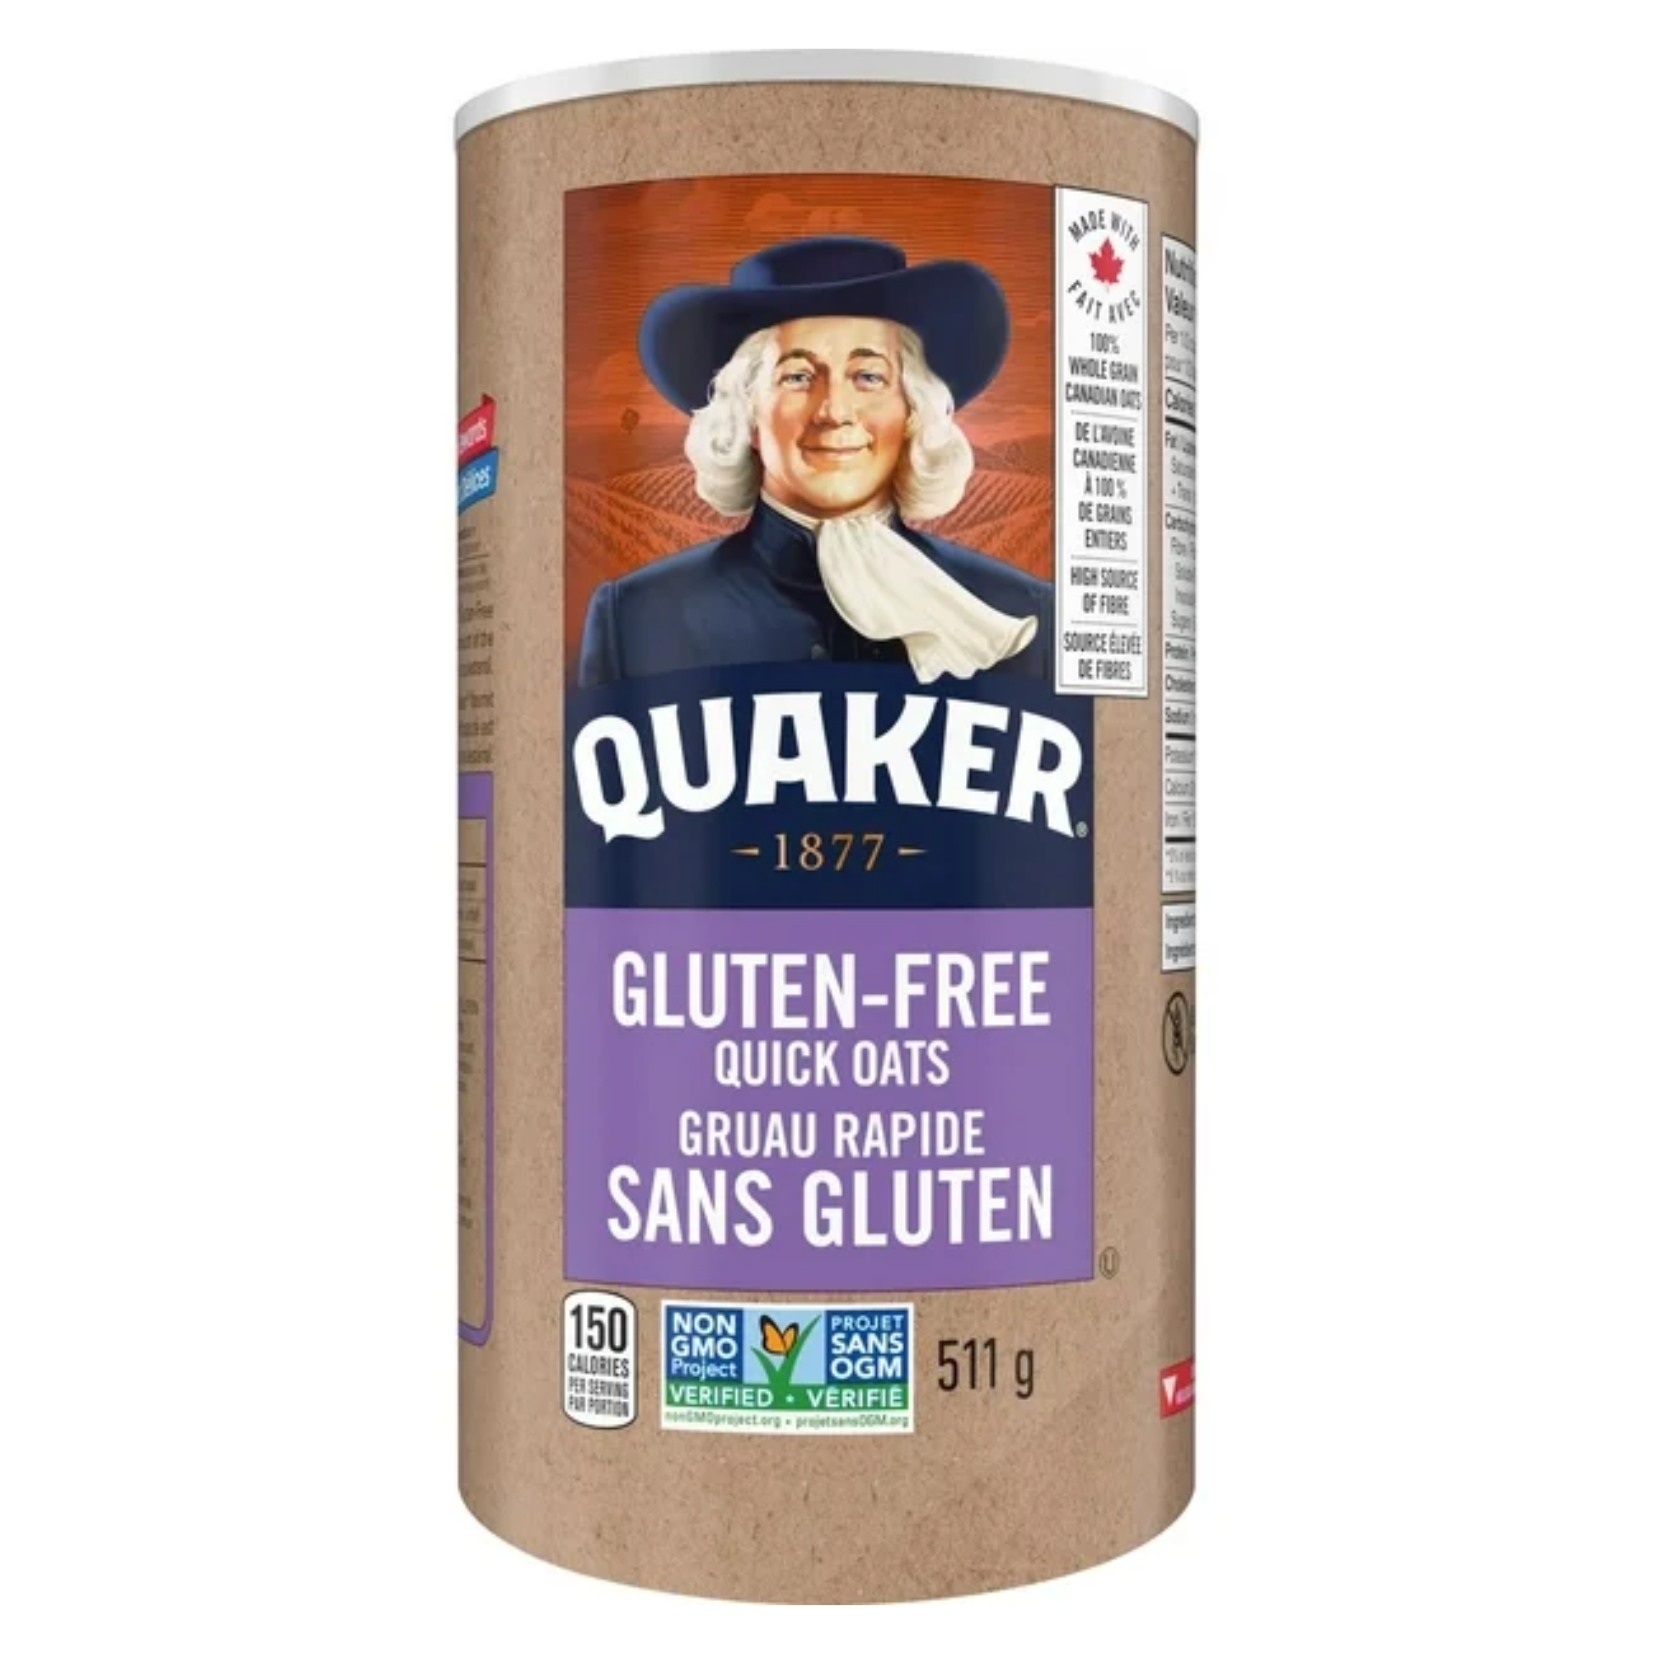 Quaker Gluten-Free Quick Oats 511g